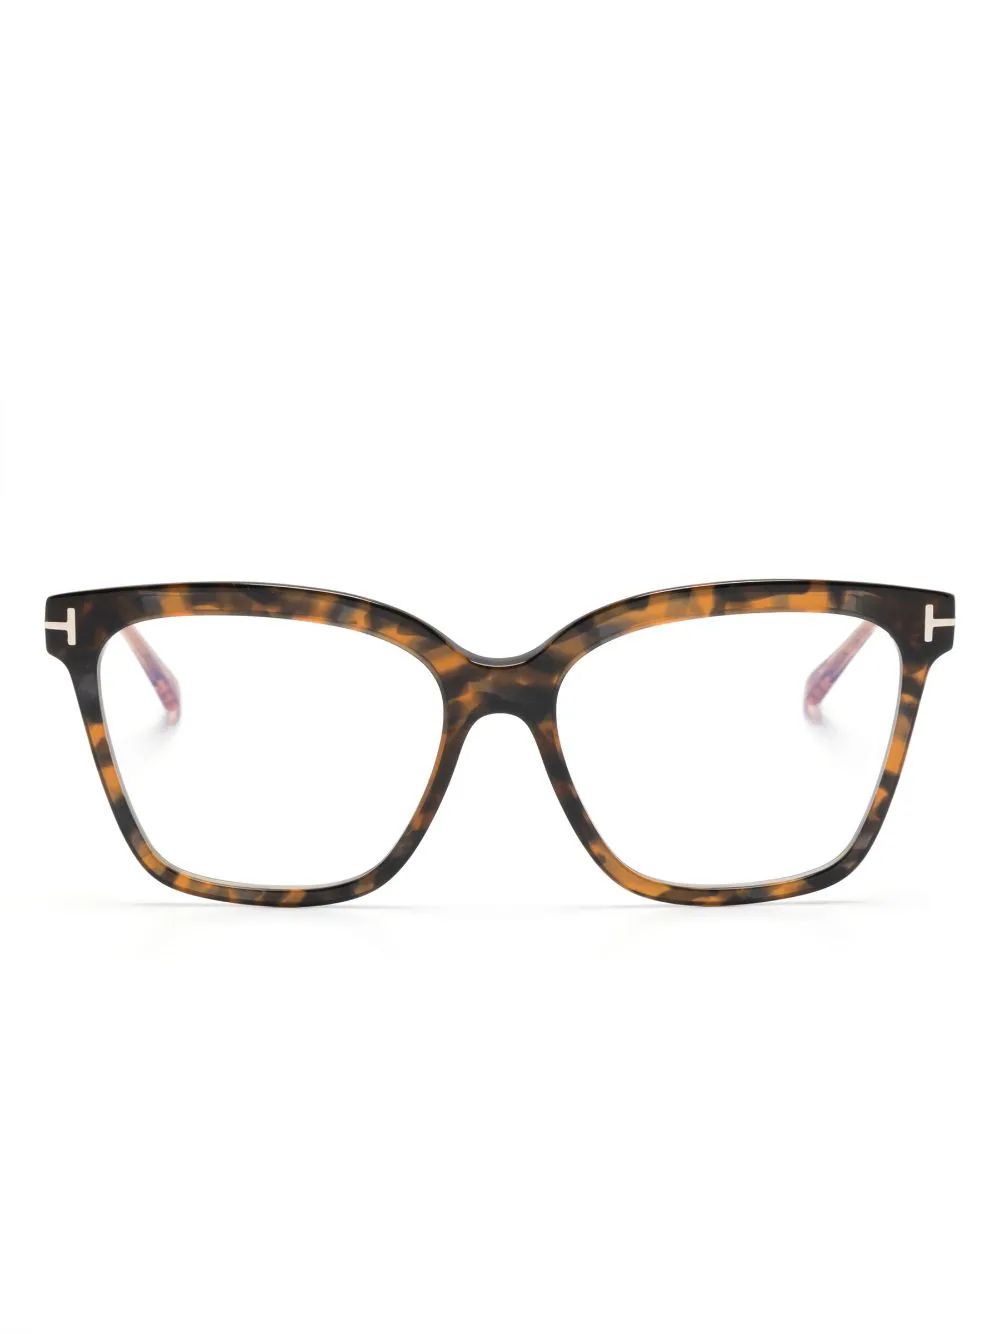 TOM FORD Eyewear tortoiseshell-effect cat-eye Glasses - Farfetch | Farfetch Global